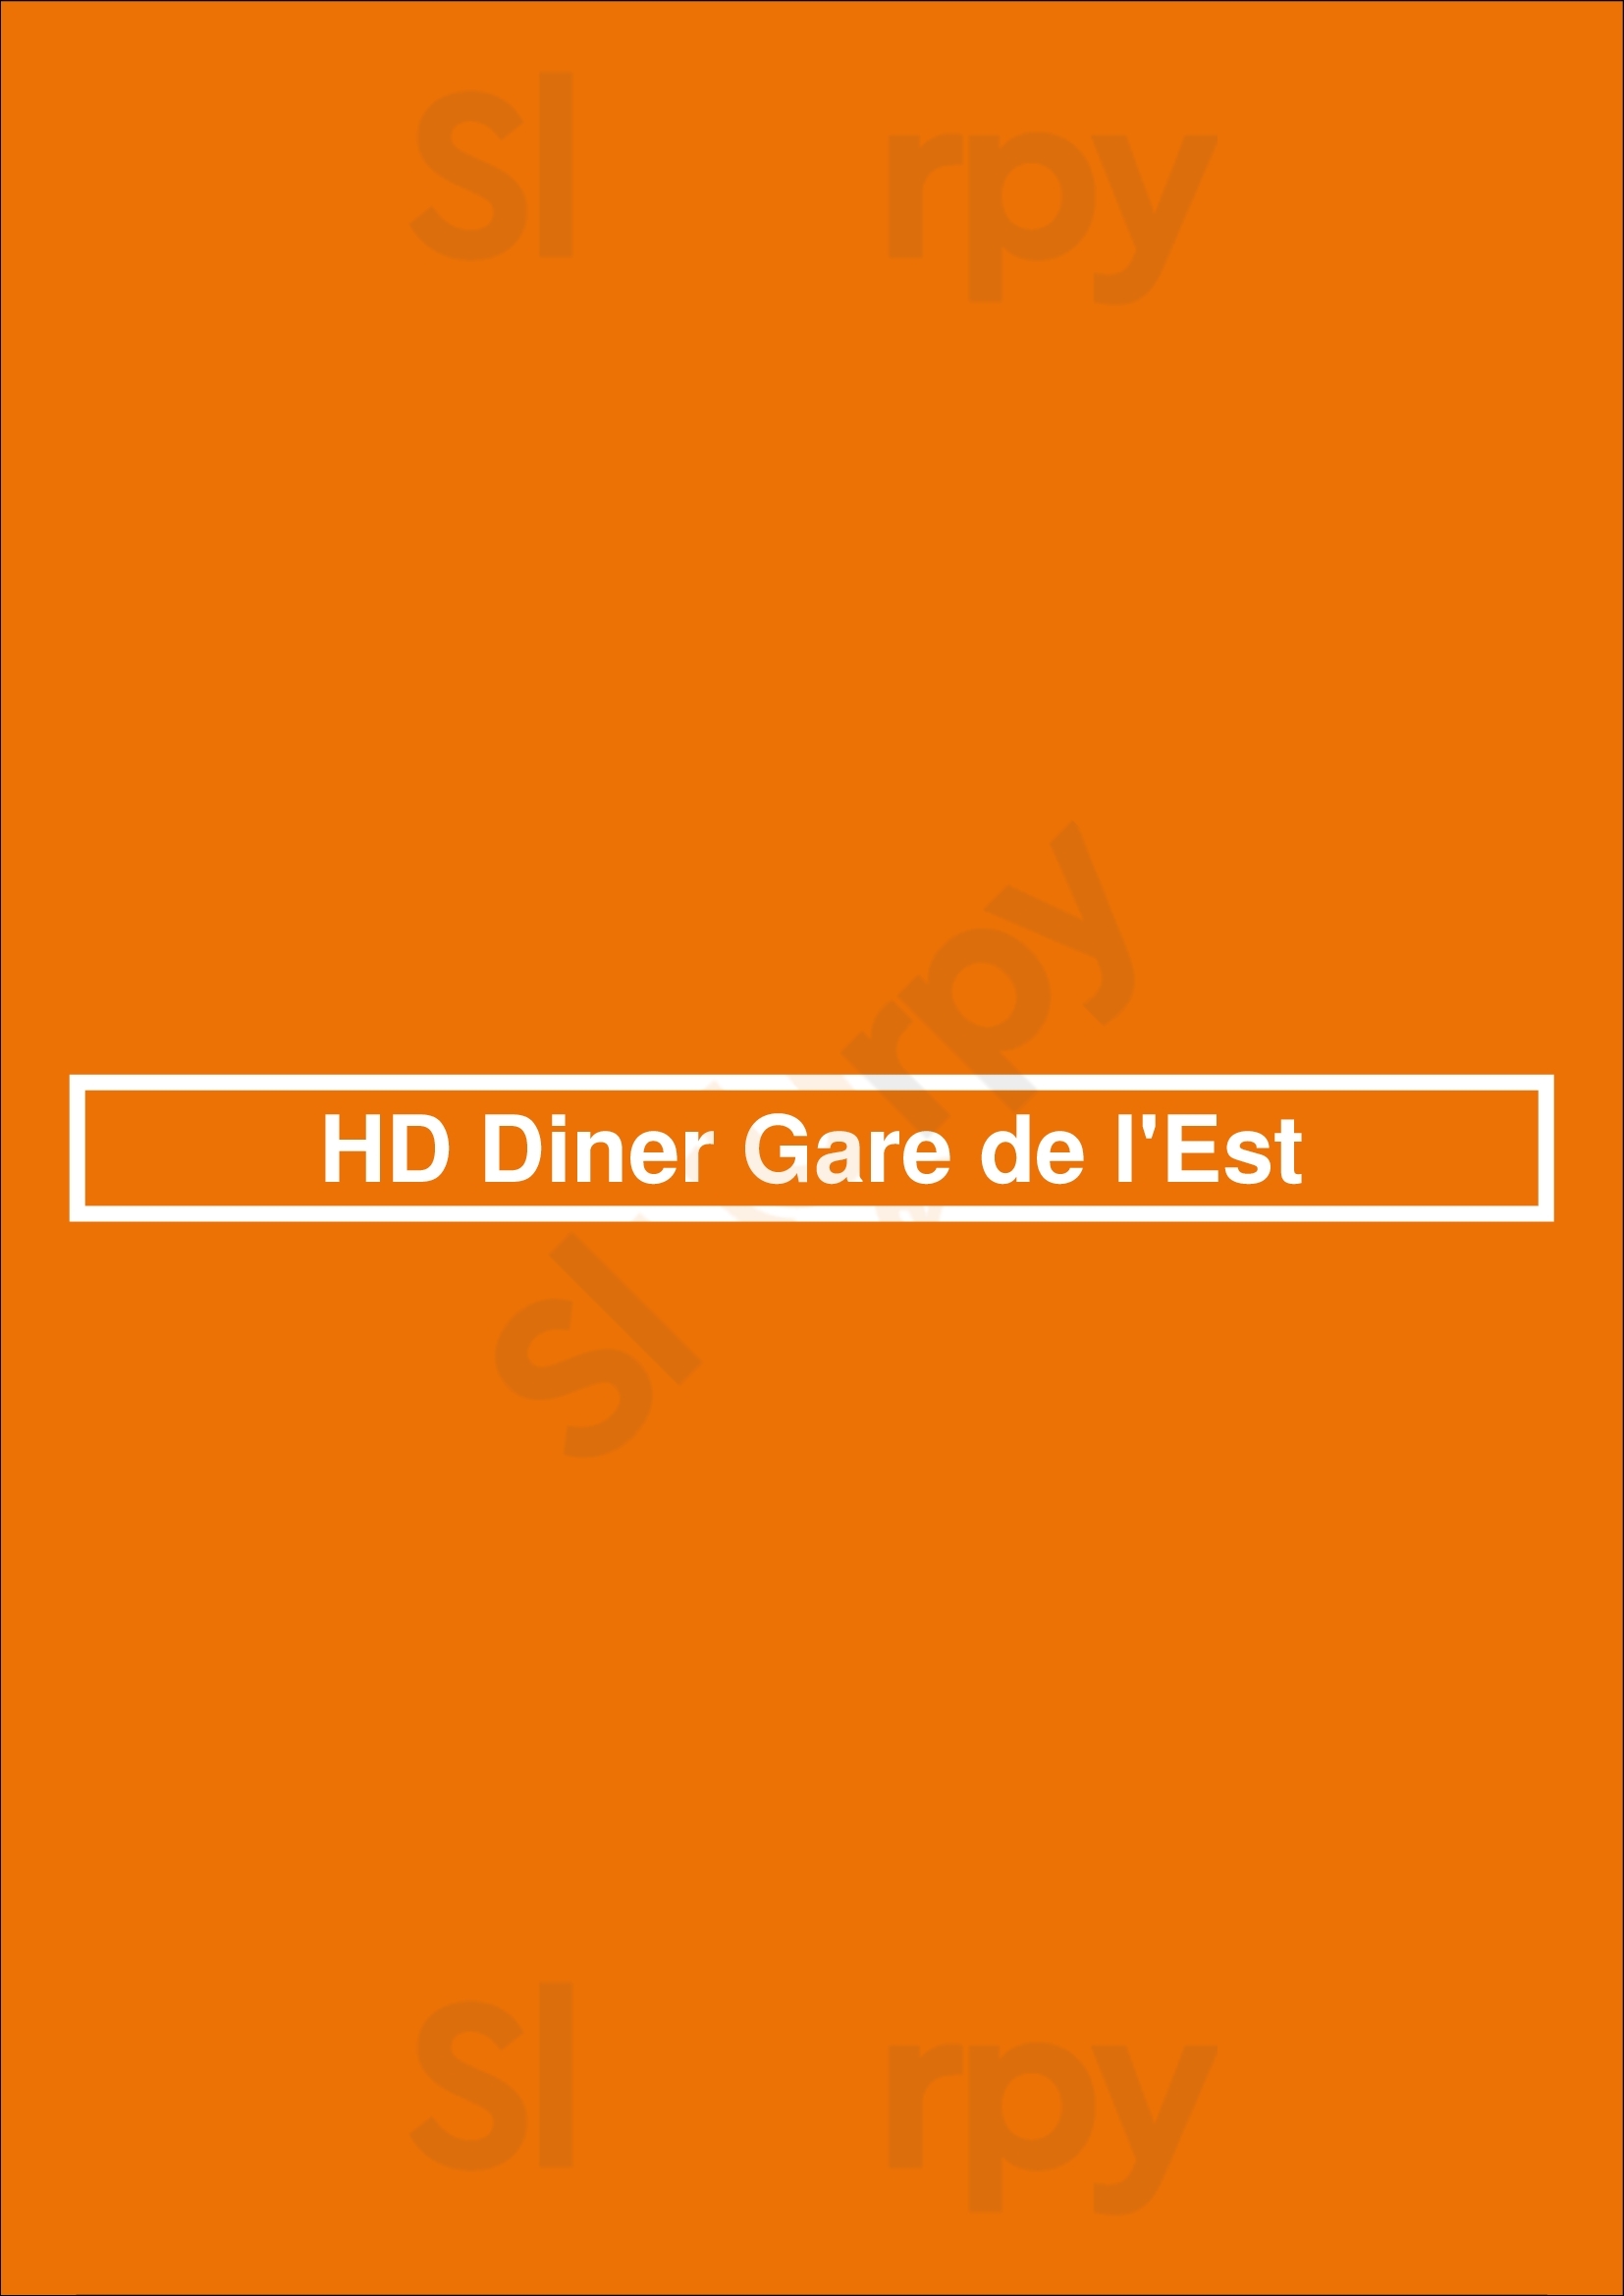 Hd Diner Gare De L'est Paris Menu - 1